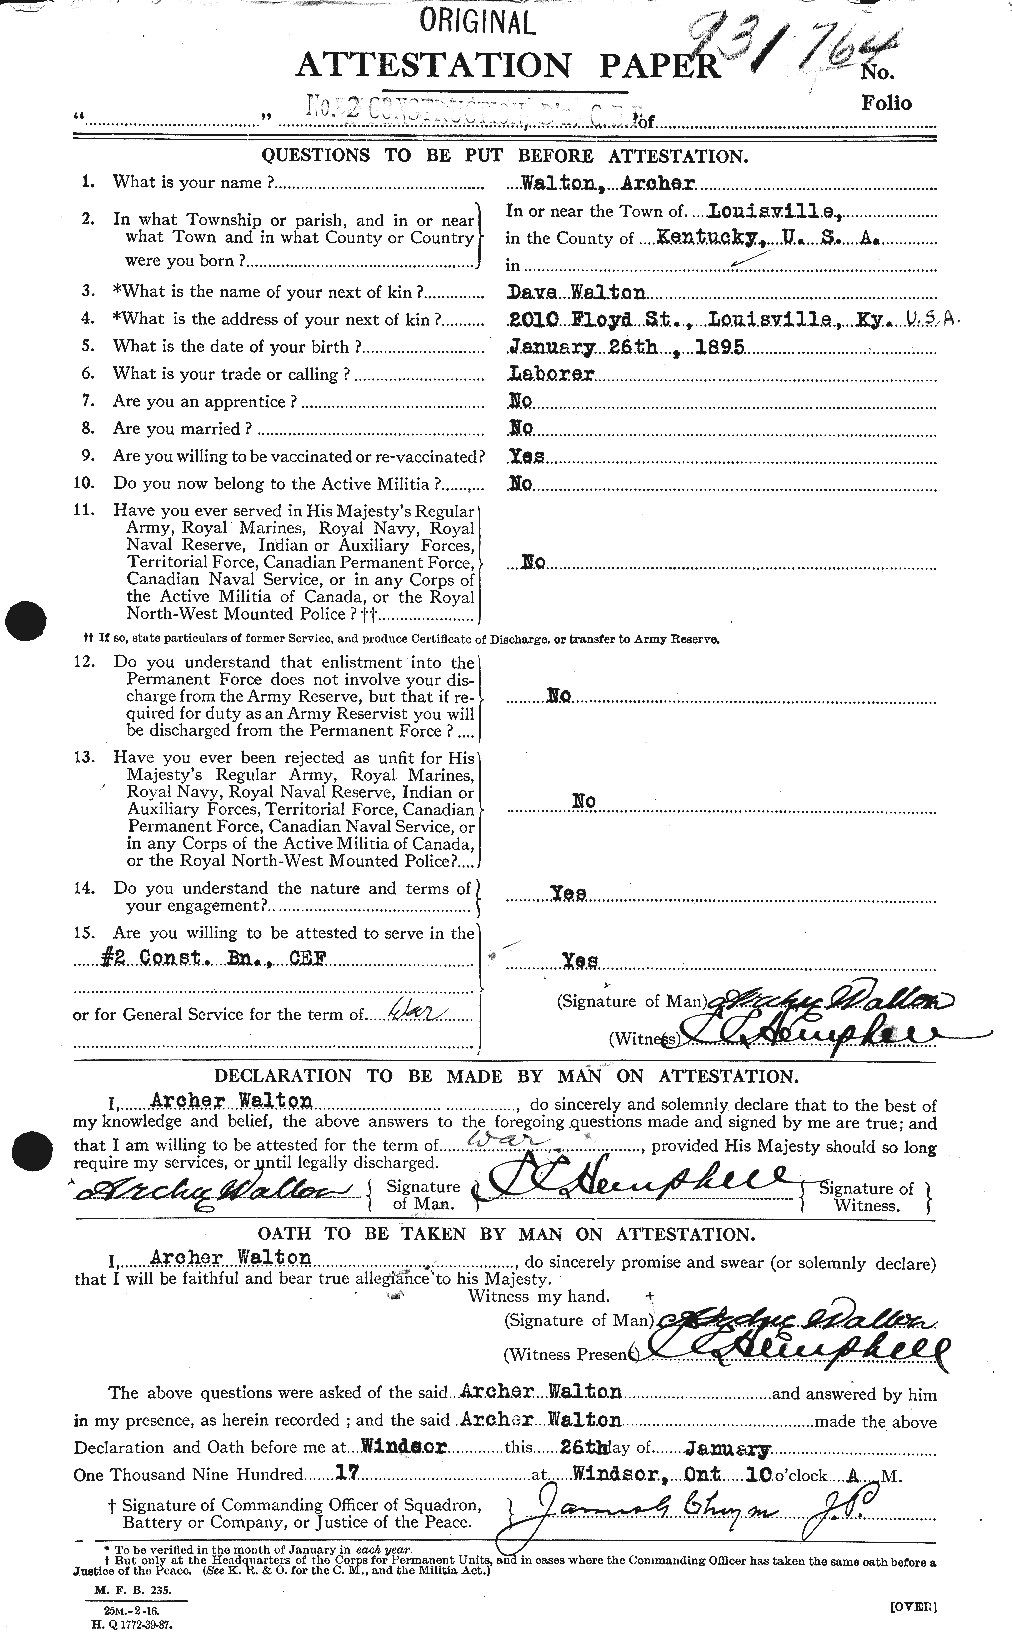 Dossiers du Personnel de la Première Guerre mondiale - CEC 655513a